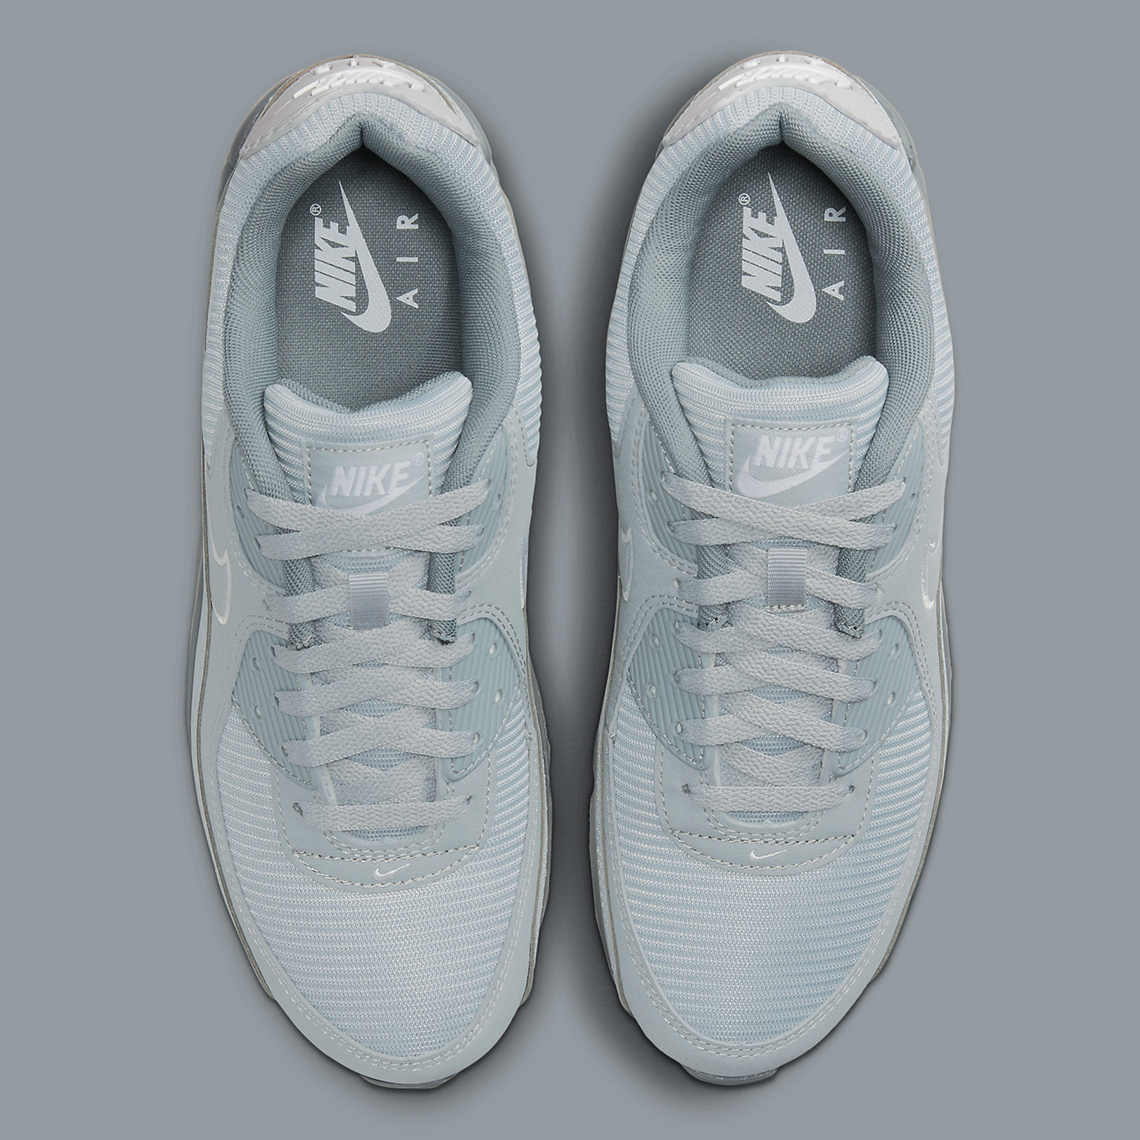 Nike Air Max 90 Grey FJ4218-002 | SneakerNews.com